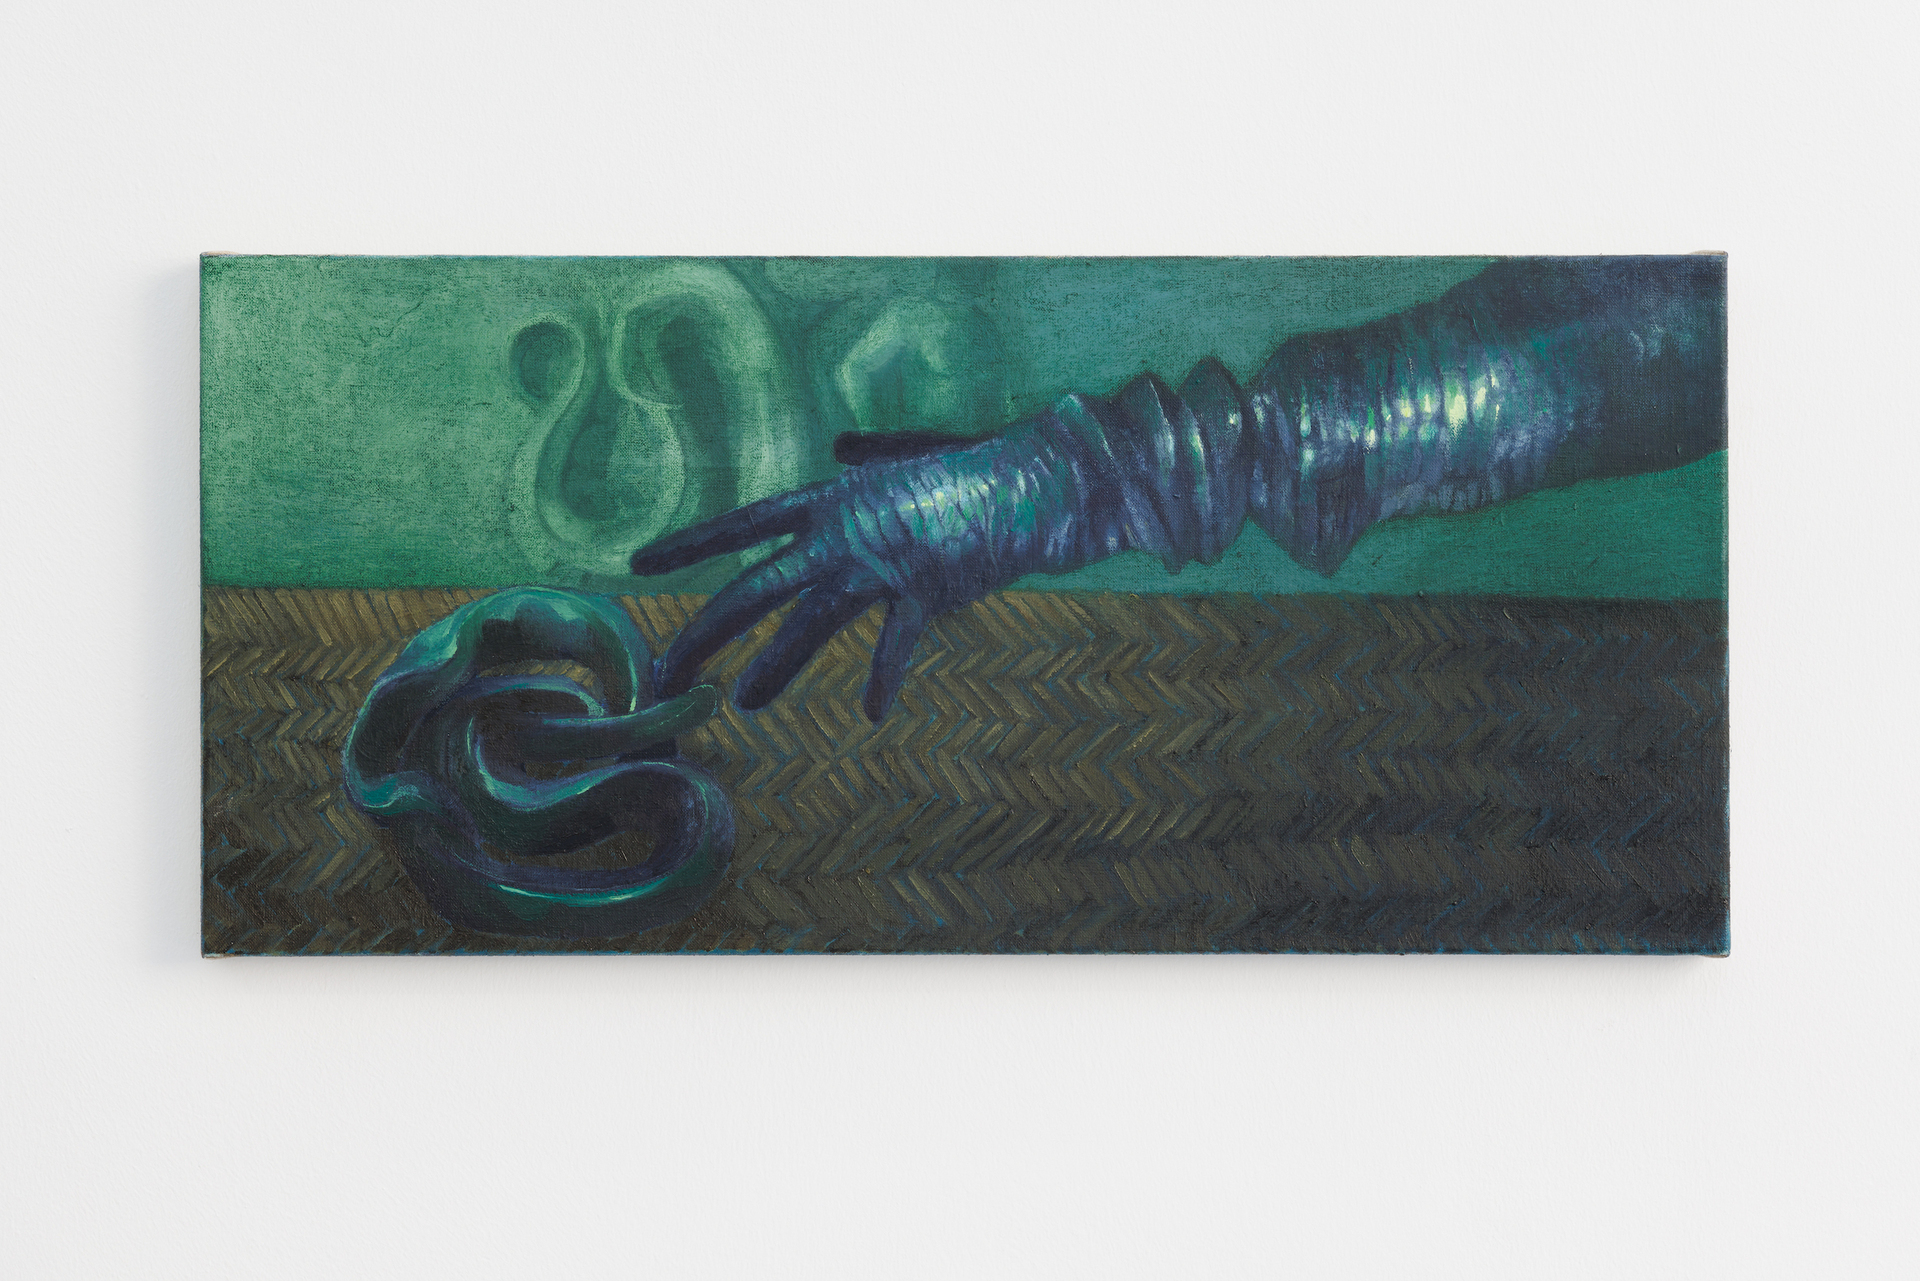 Alessandro Fogo, Medusa, 2021, oil on linen, 31 x 68 cm